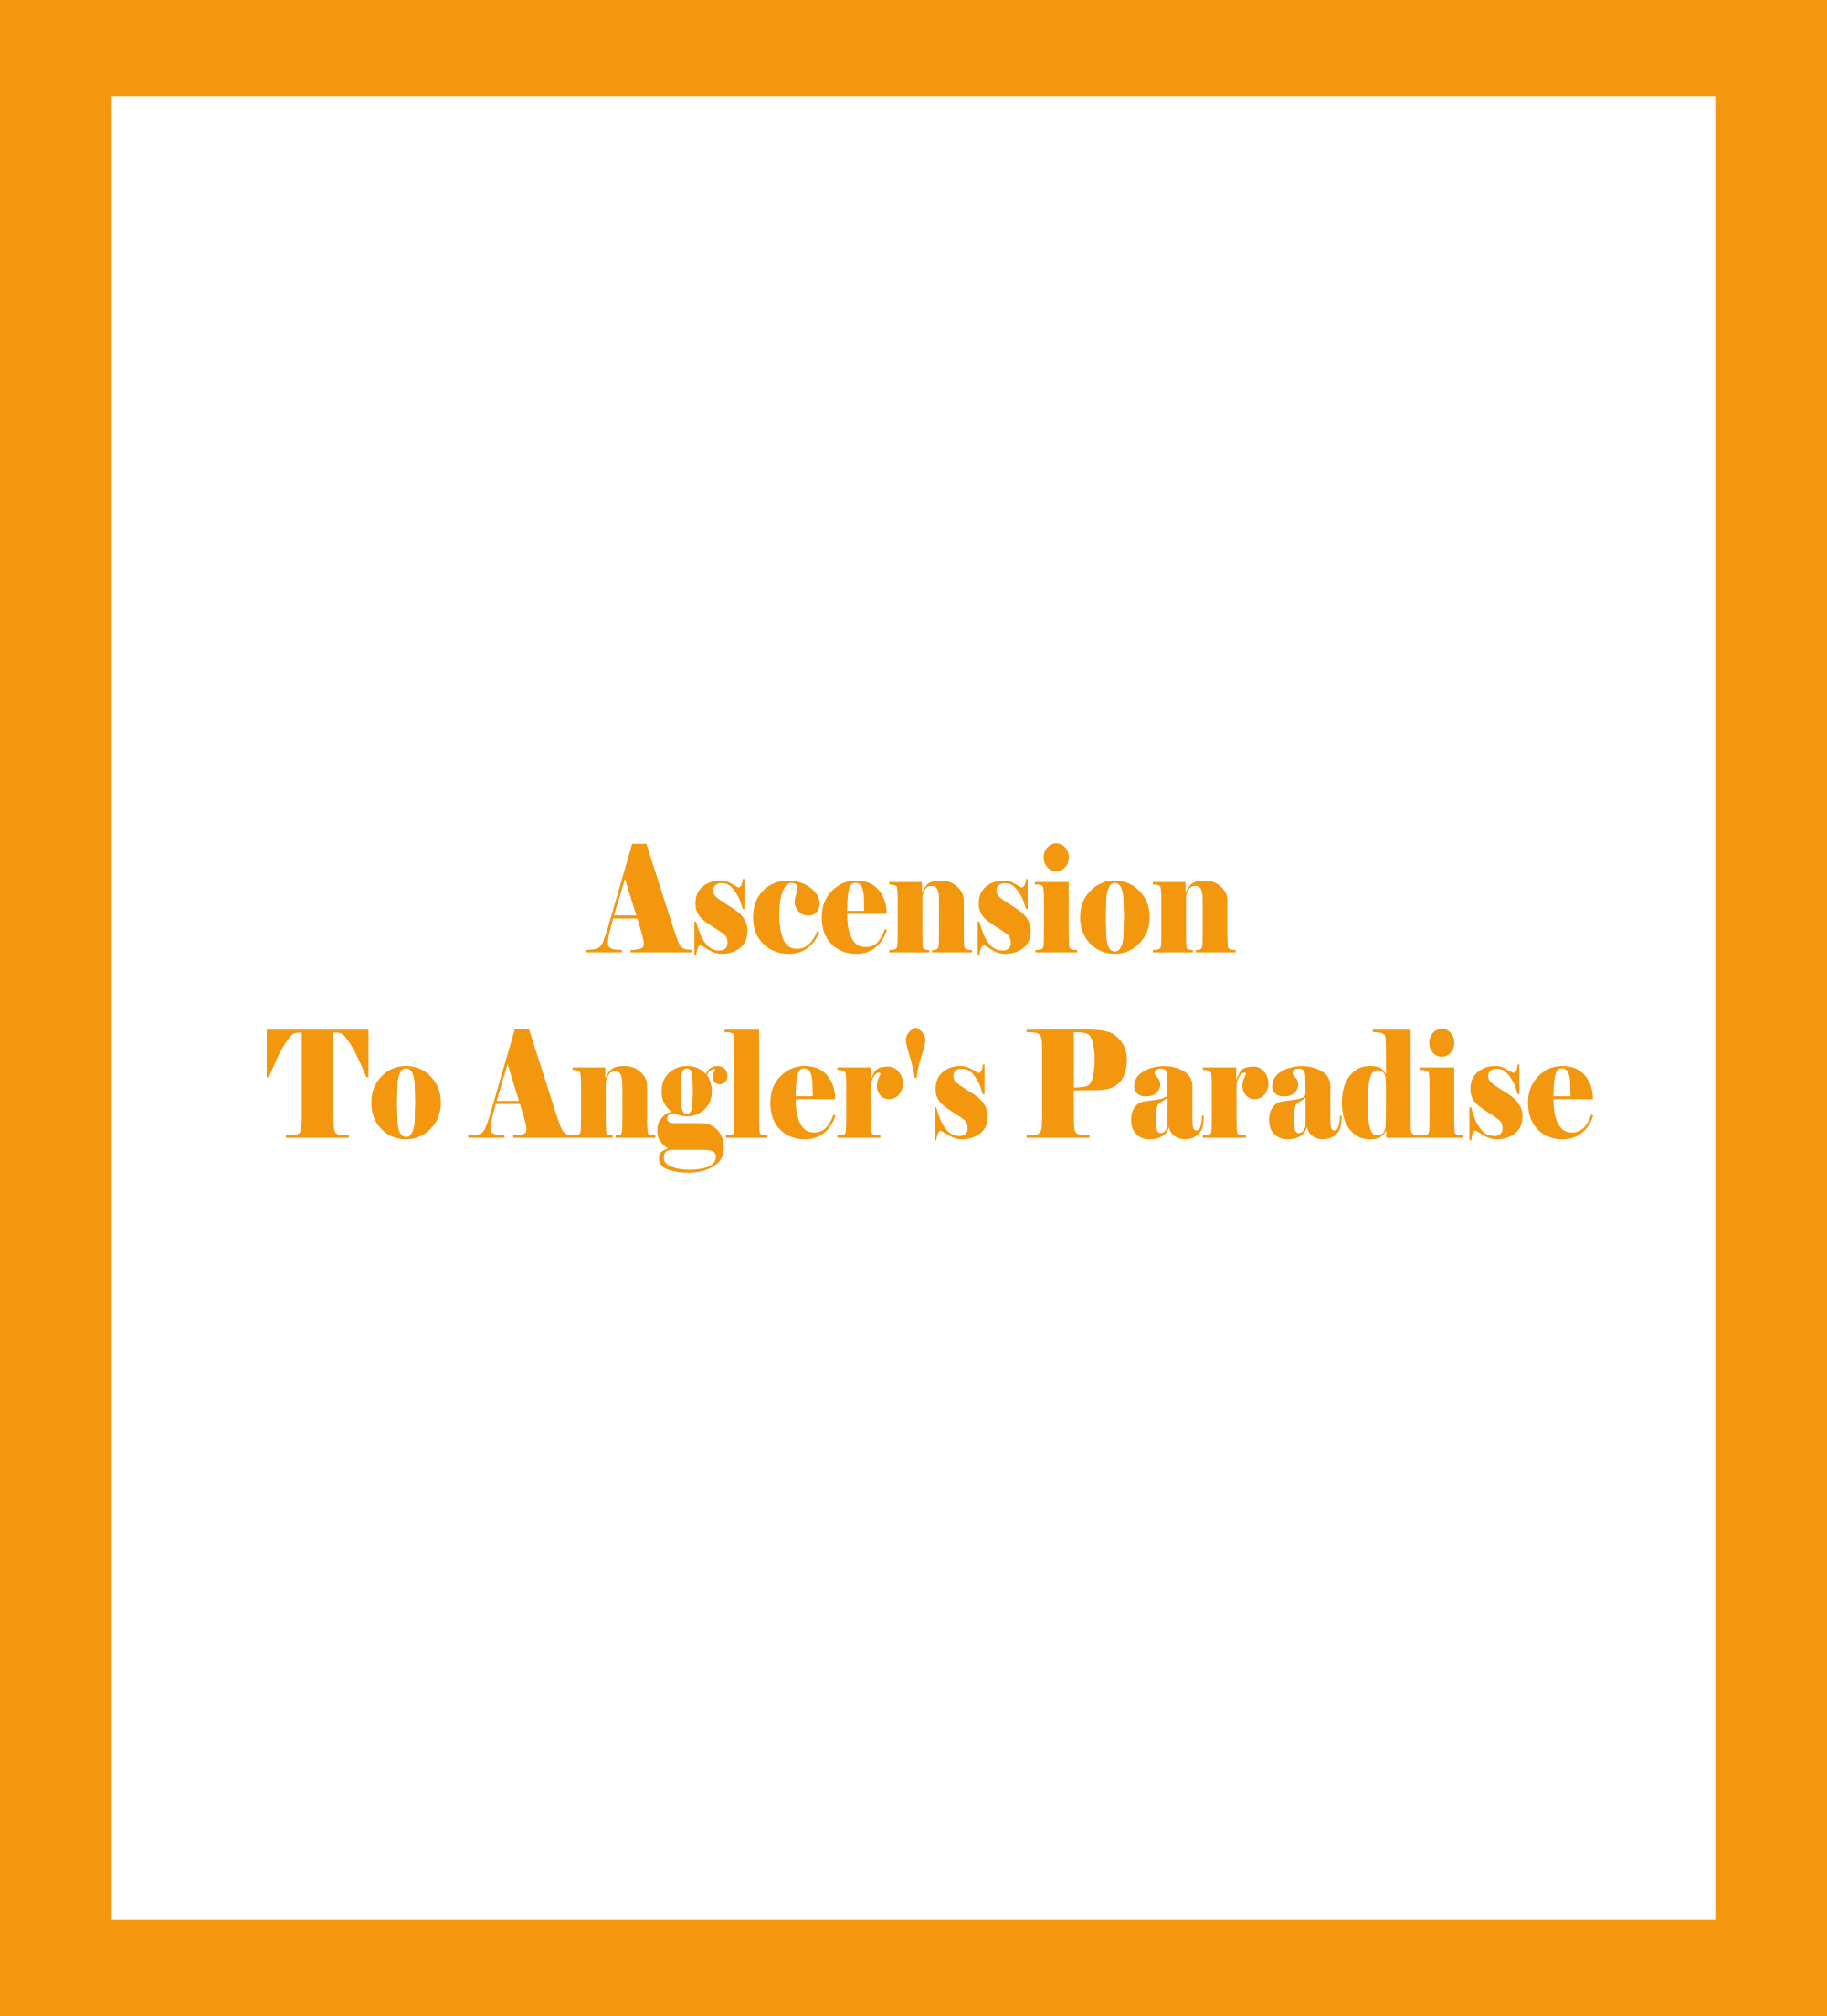 Caratula de Ascension To Angler's Paradise (Ascensión al paraíso del pescador) 